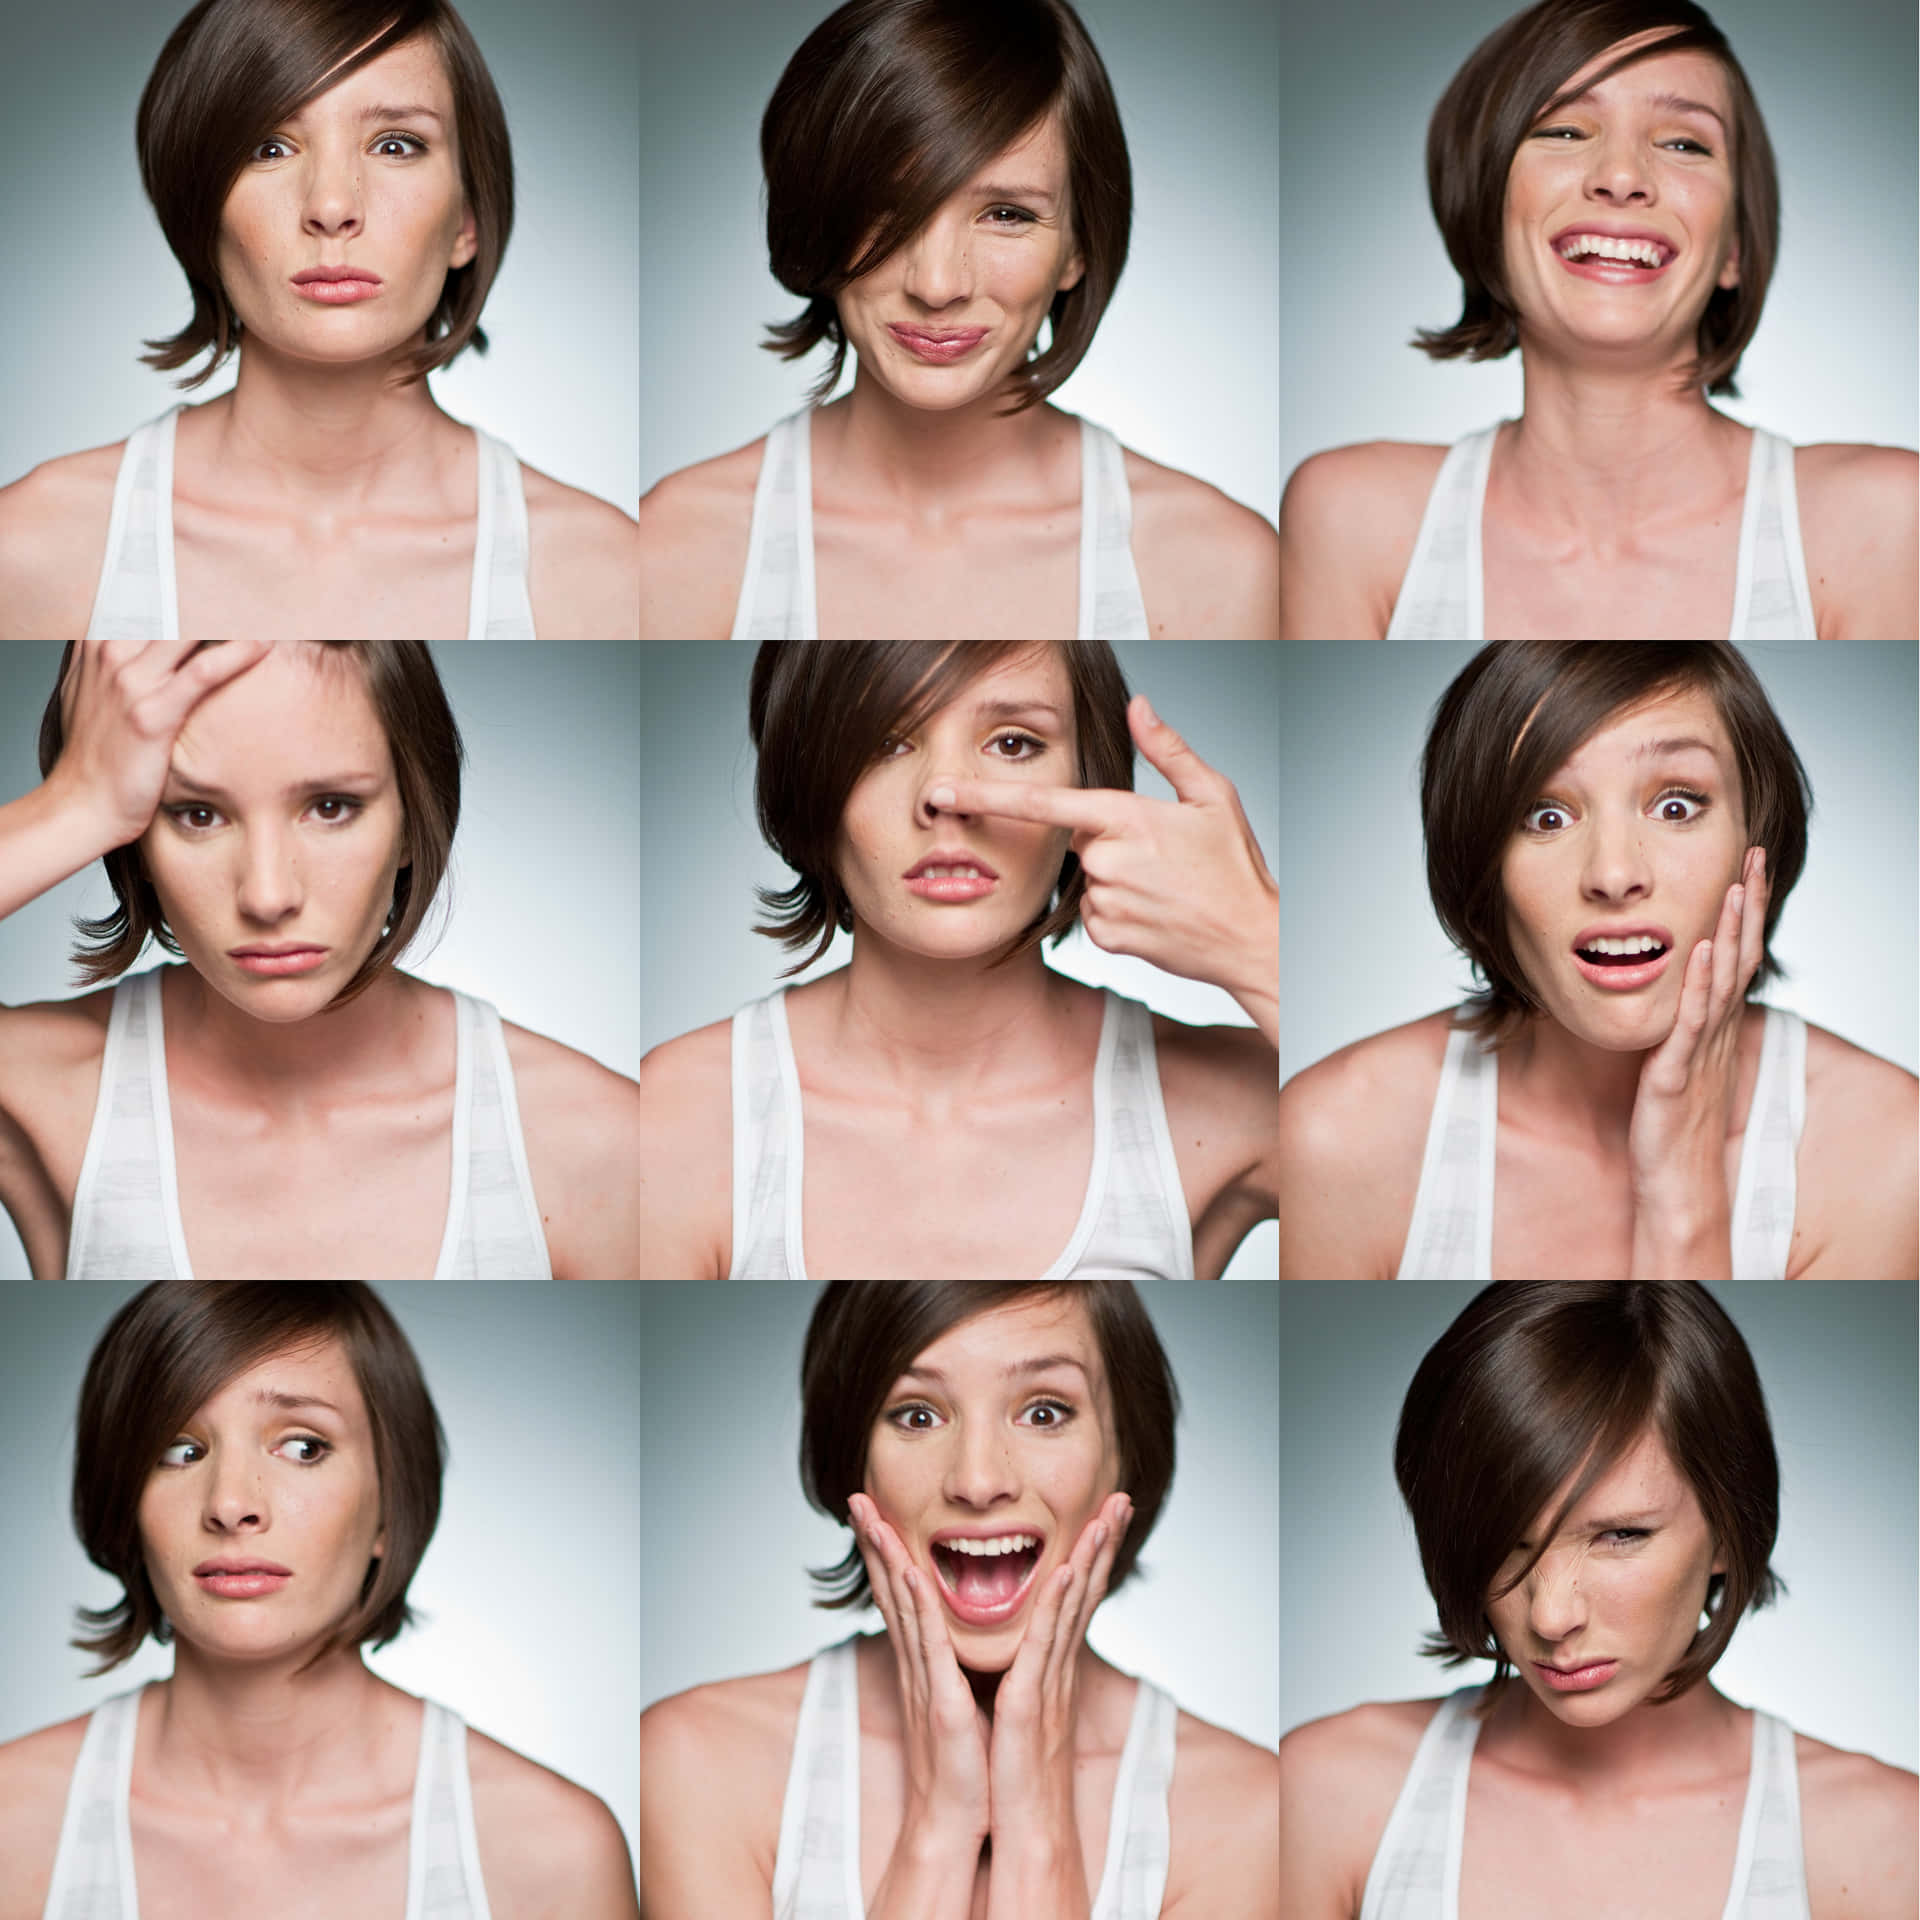 Einefrau In Verschiedenen Posen Mit Unterschiedlichen Gesichtsausdrücken